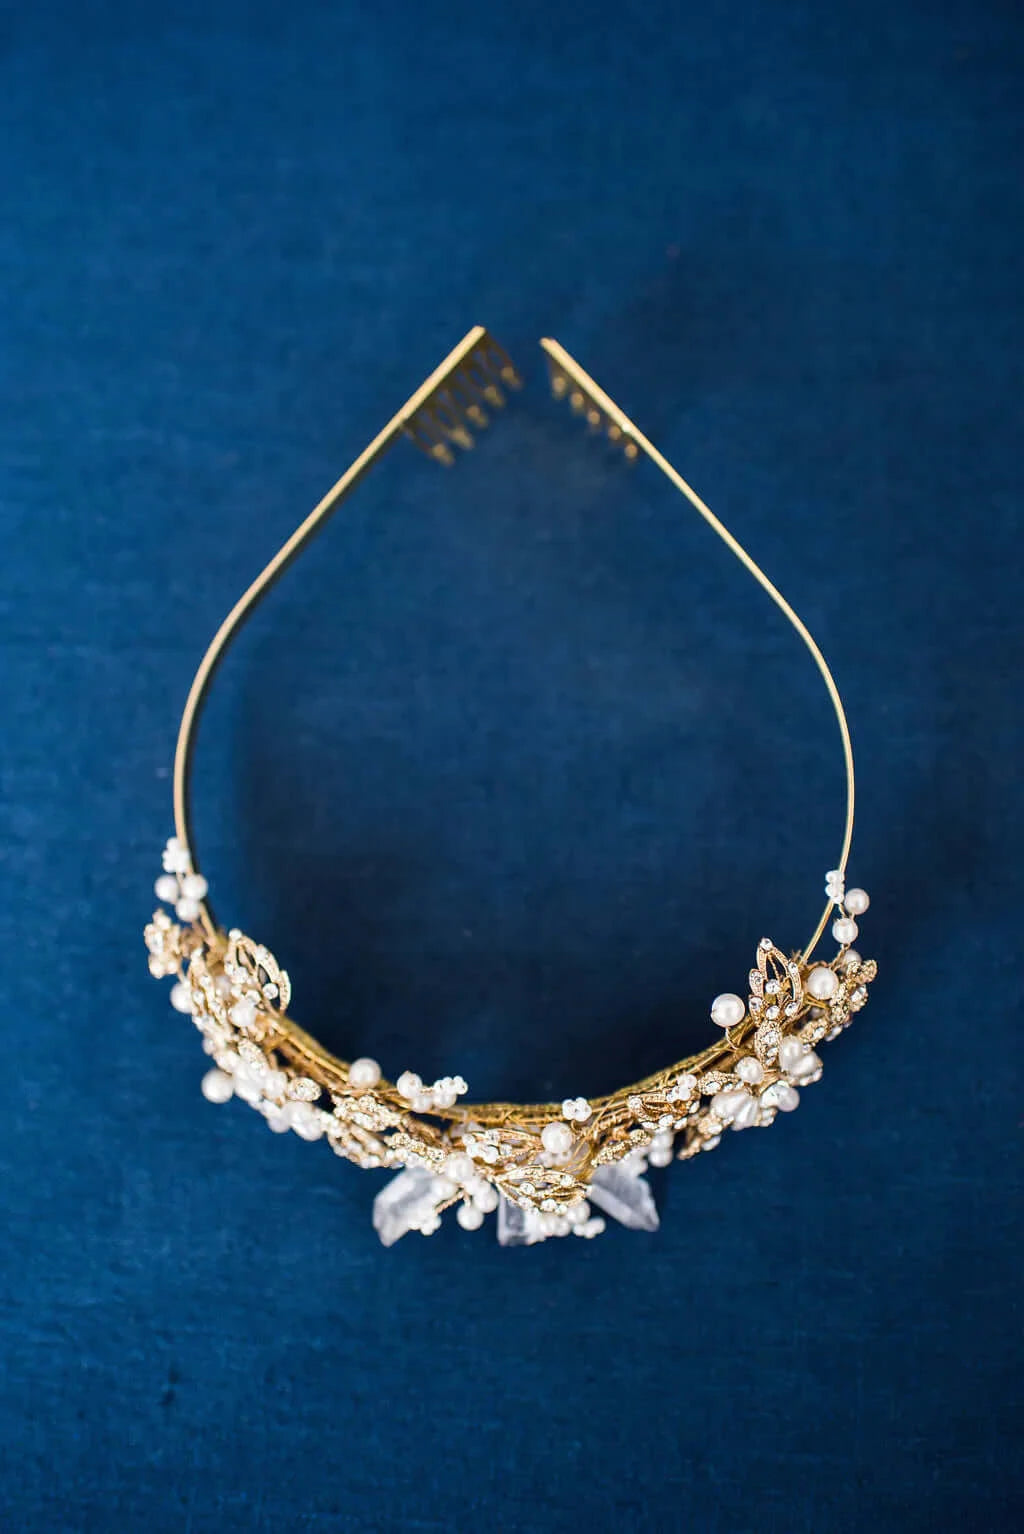 Gold Silver quartz tiara - Style 3105 Tessa Kim